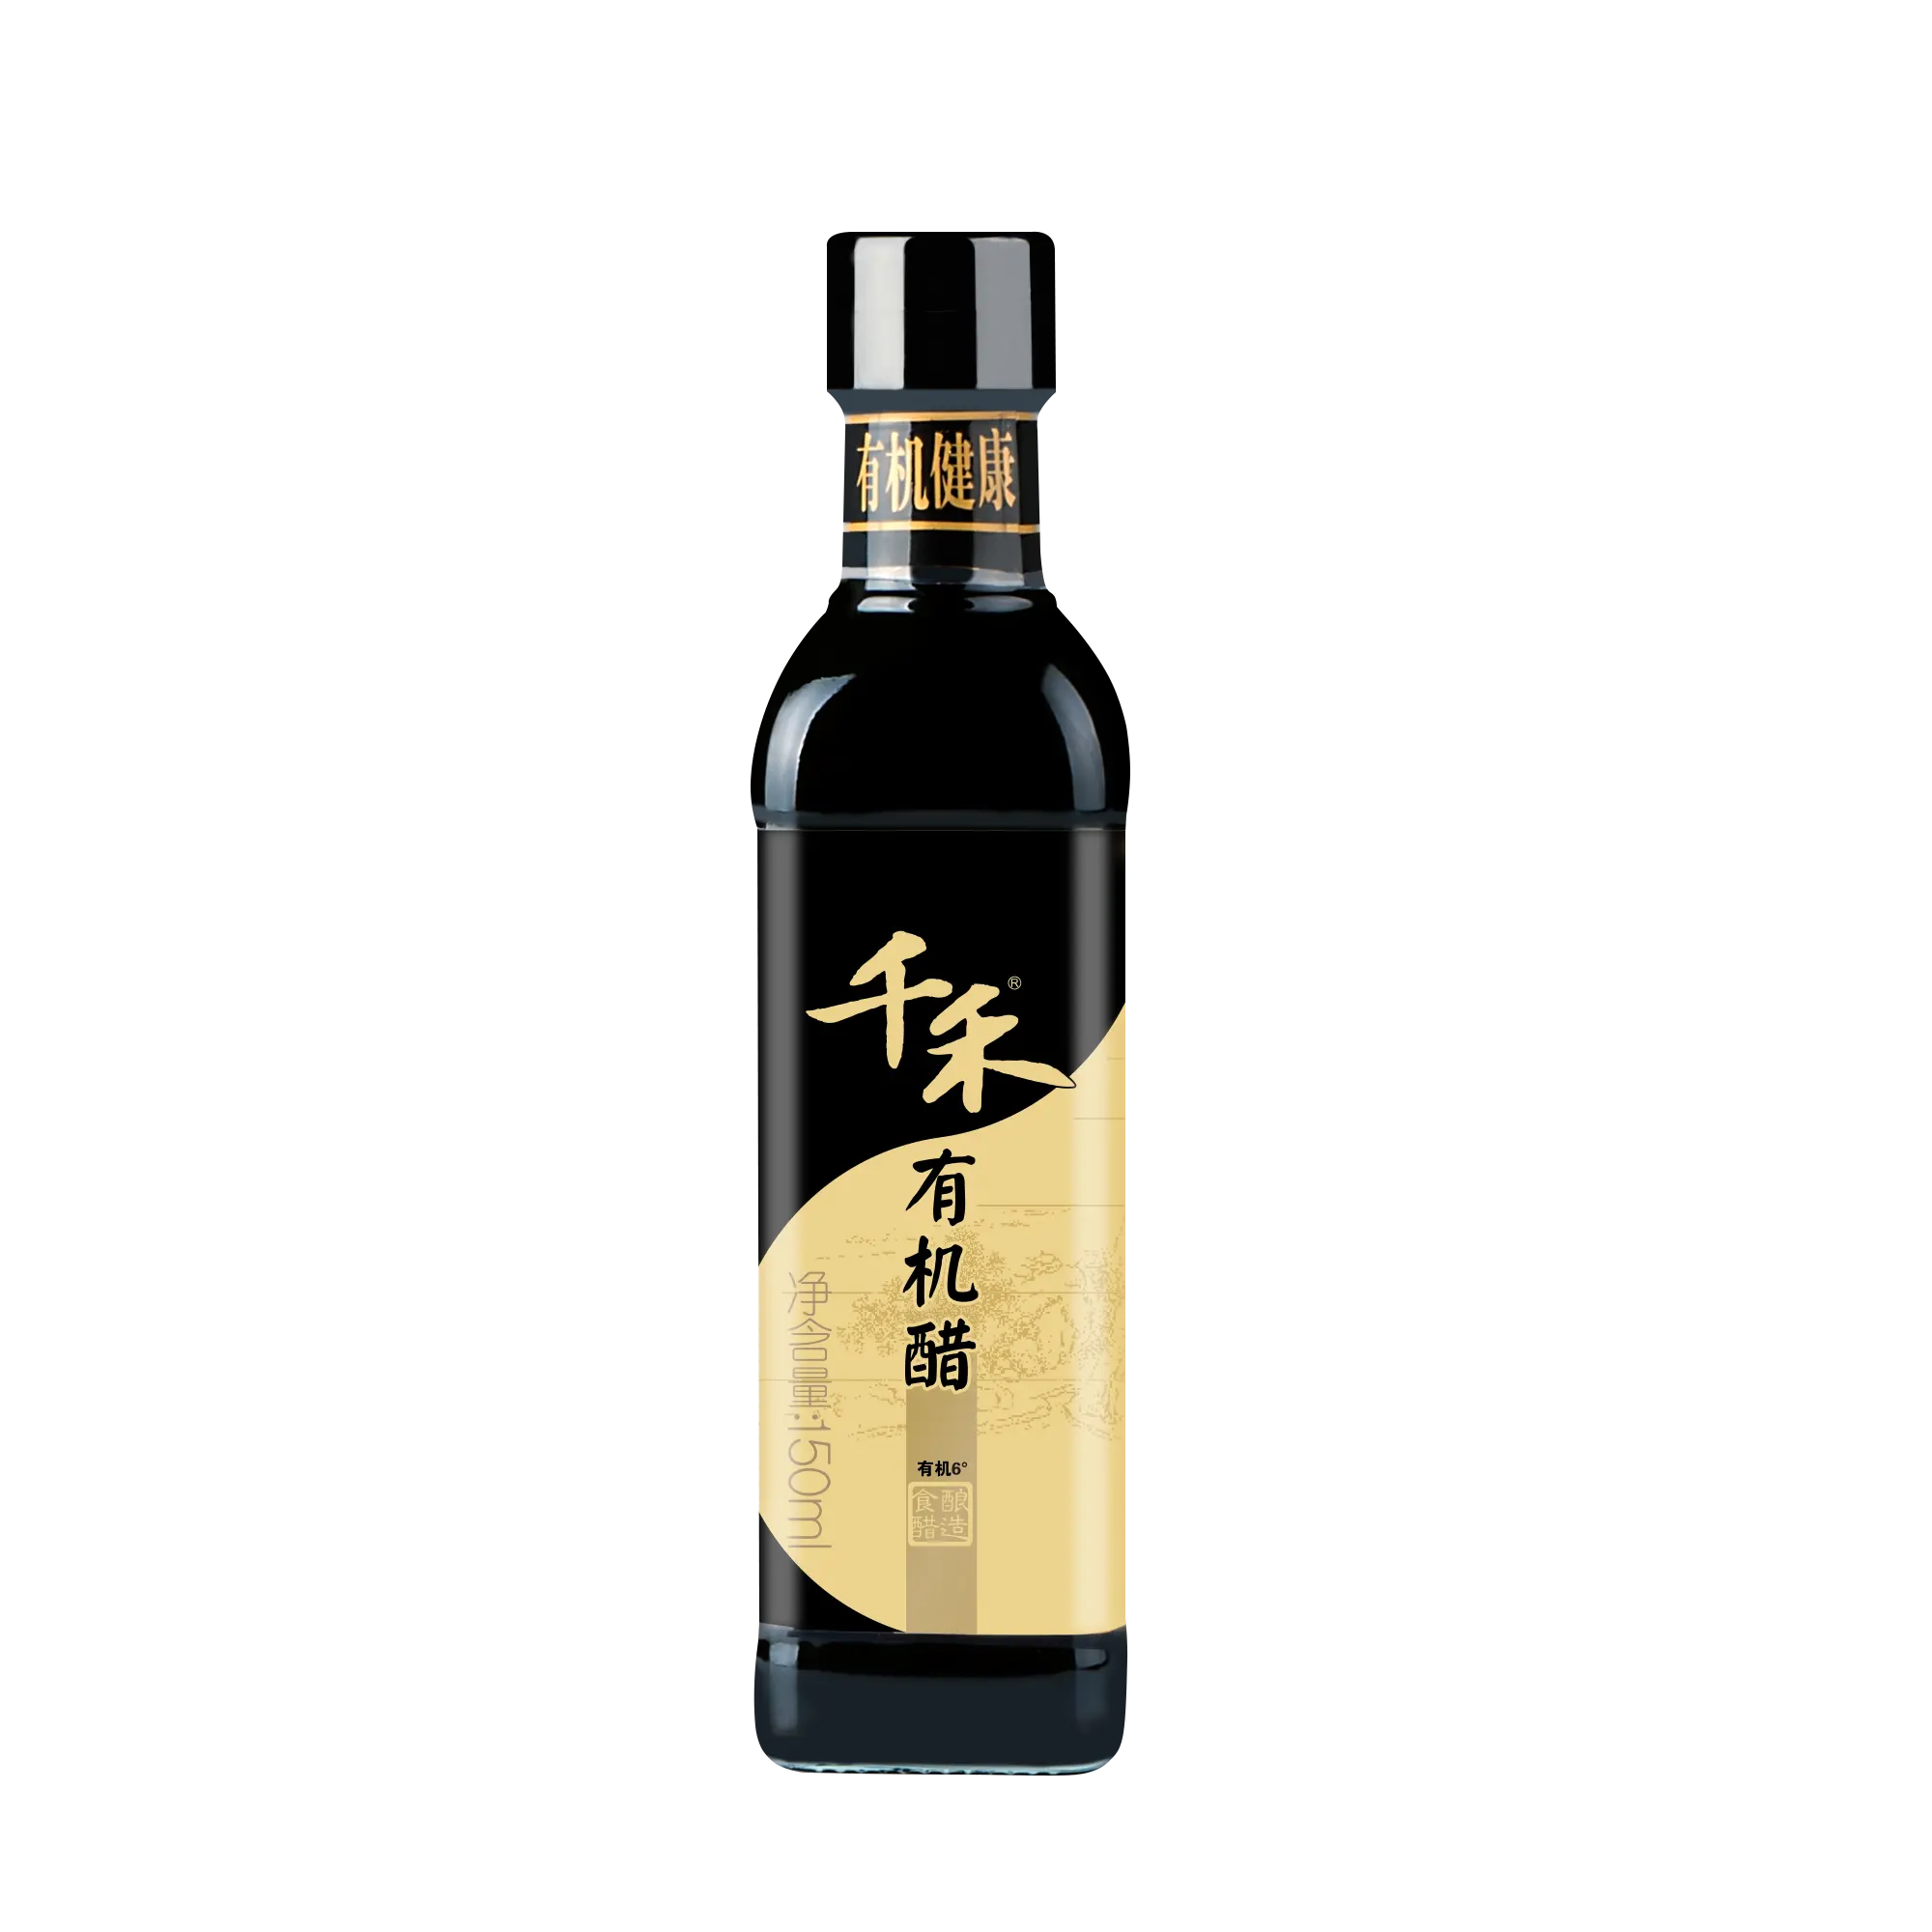 150ml Bottiglia di Vetro Tradizionalmente Prodotta Cibo Cinese UE Certificato Organico Aceto